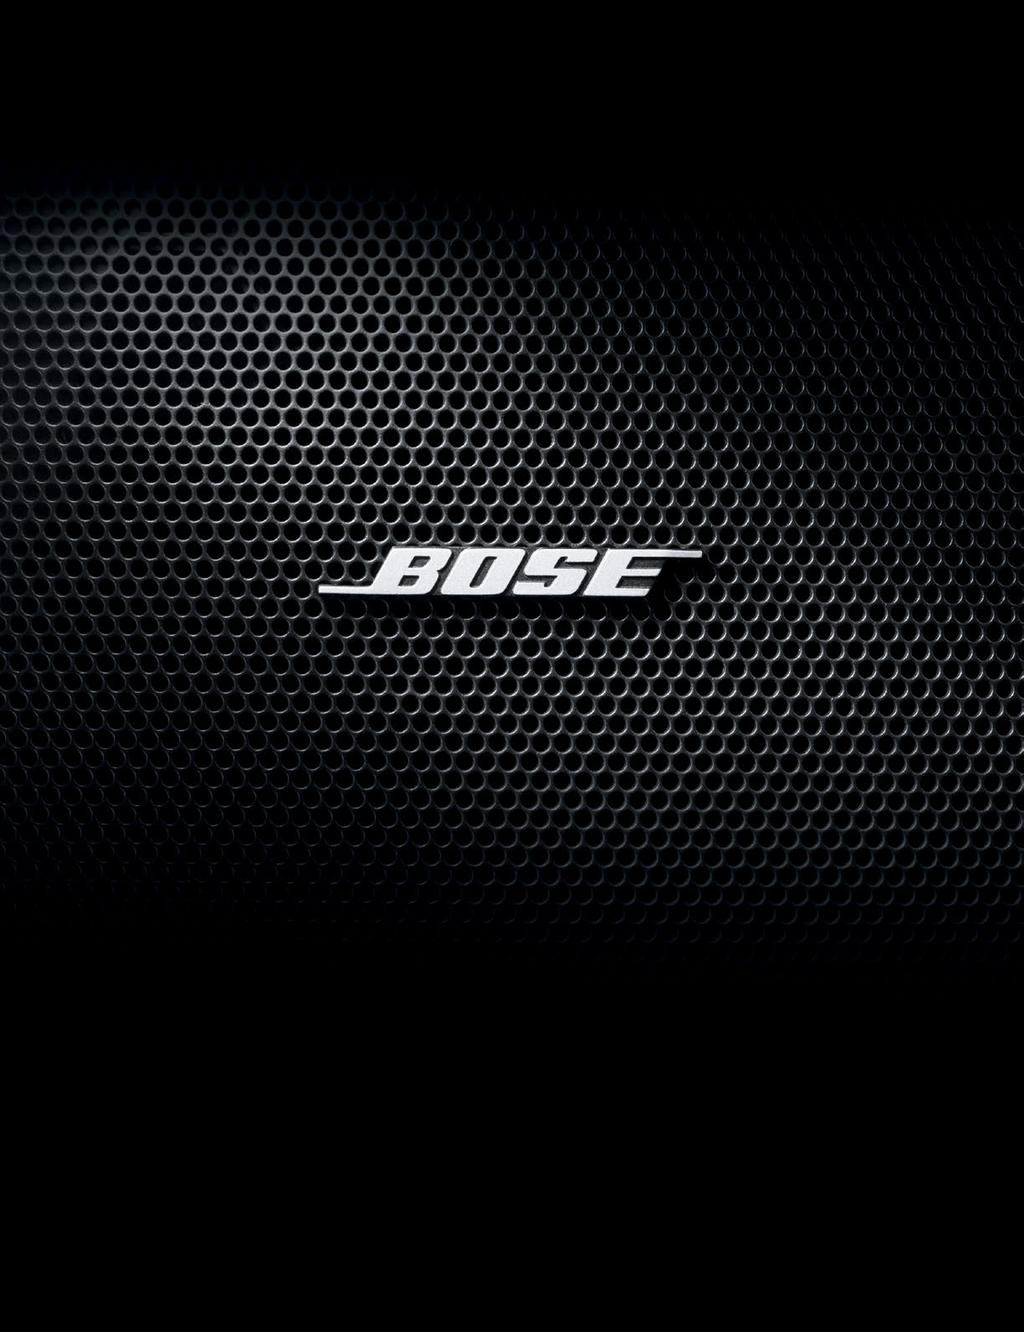 SISTEMA DE AUDIO BOSE La tecnología Bose AudioPilot detecta y diferencia constantemente entre música y ruido ambiental, a través de un micrófono dentro de la cabina, y